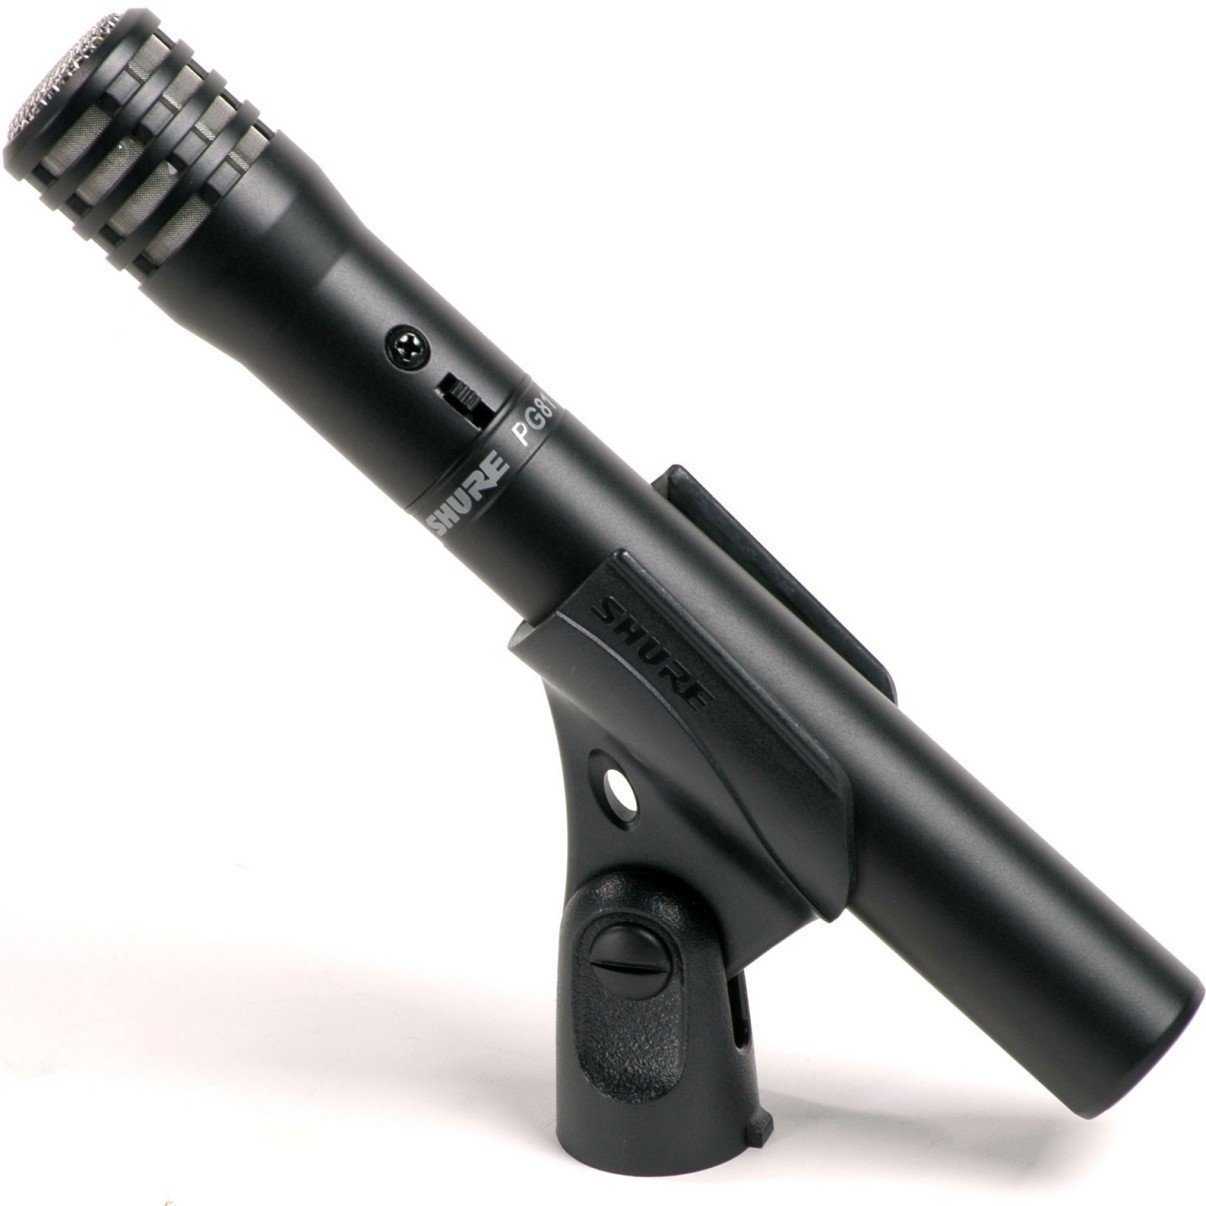 Instrument Condenser Microphone Shure PG81-XLR